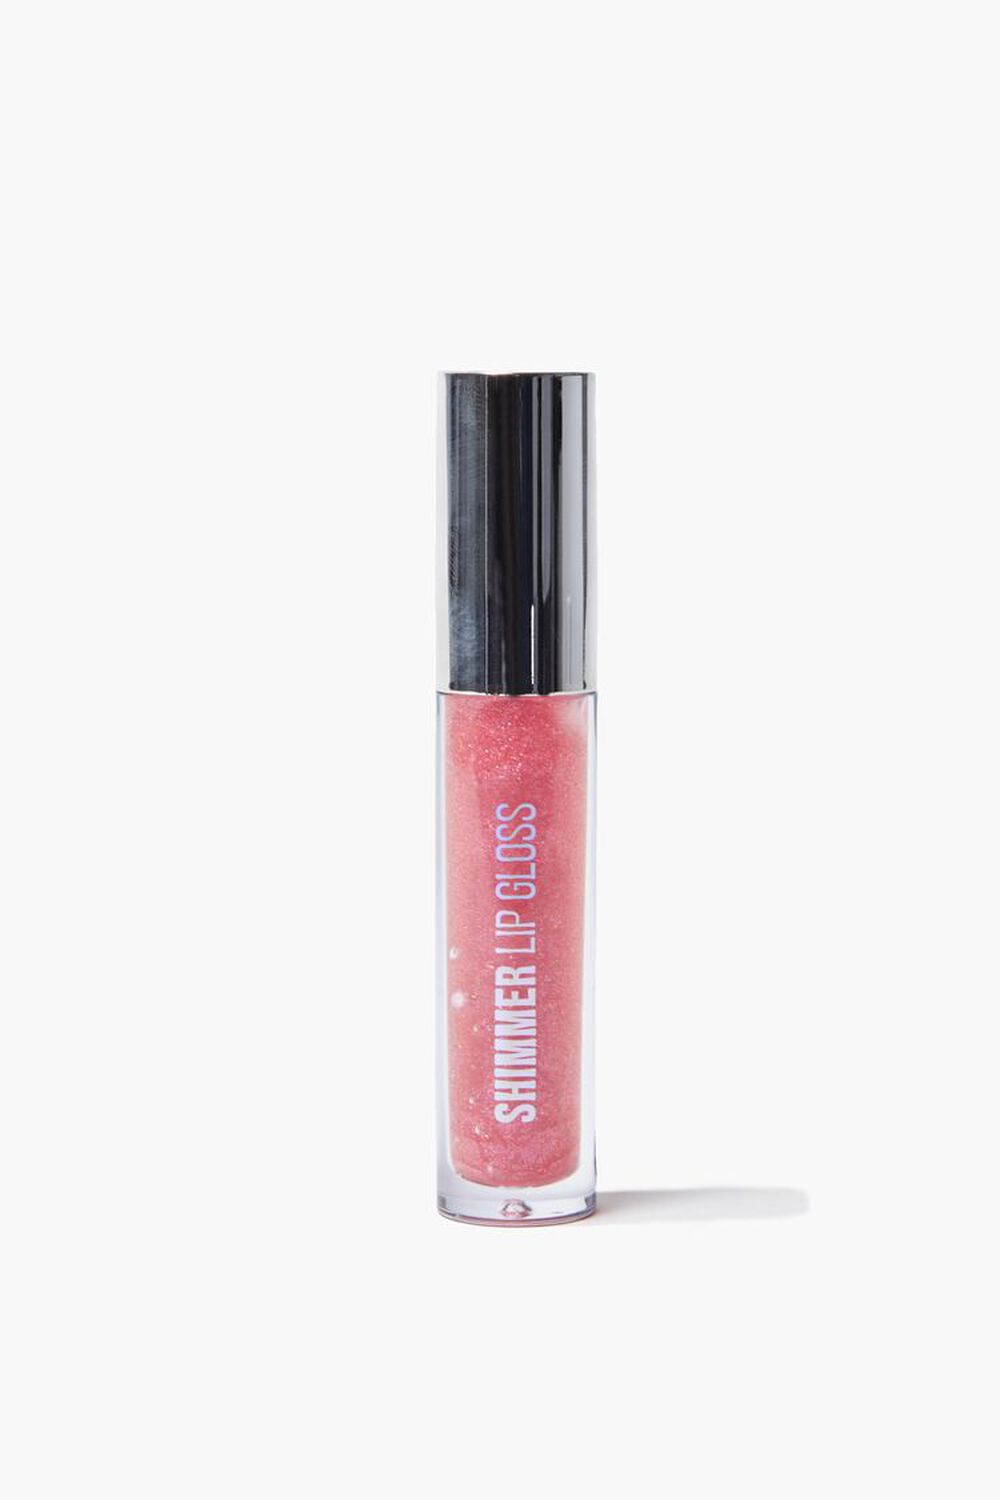 PINK Shimmer Lip Gloss, image 1